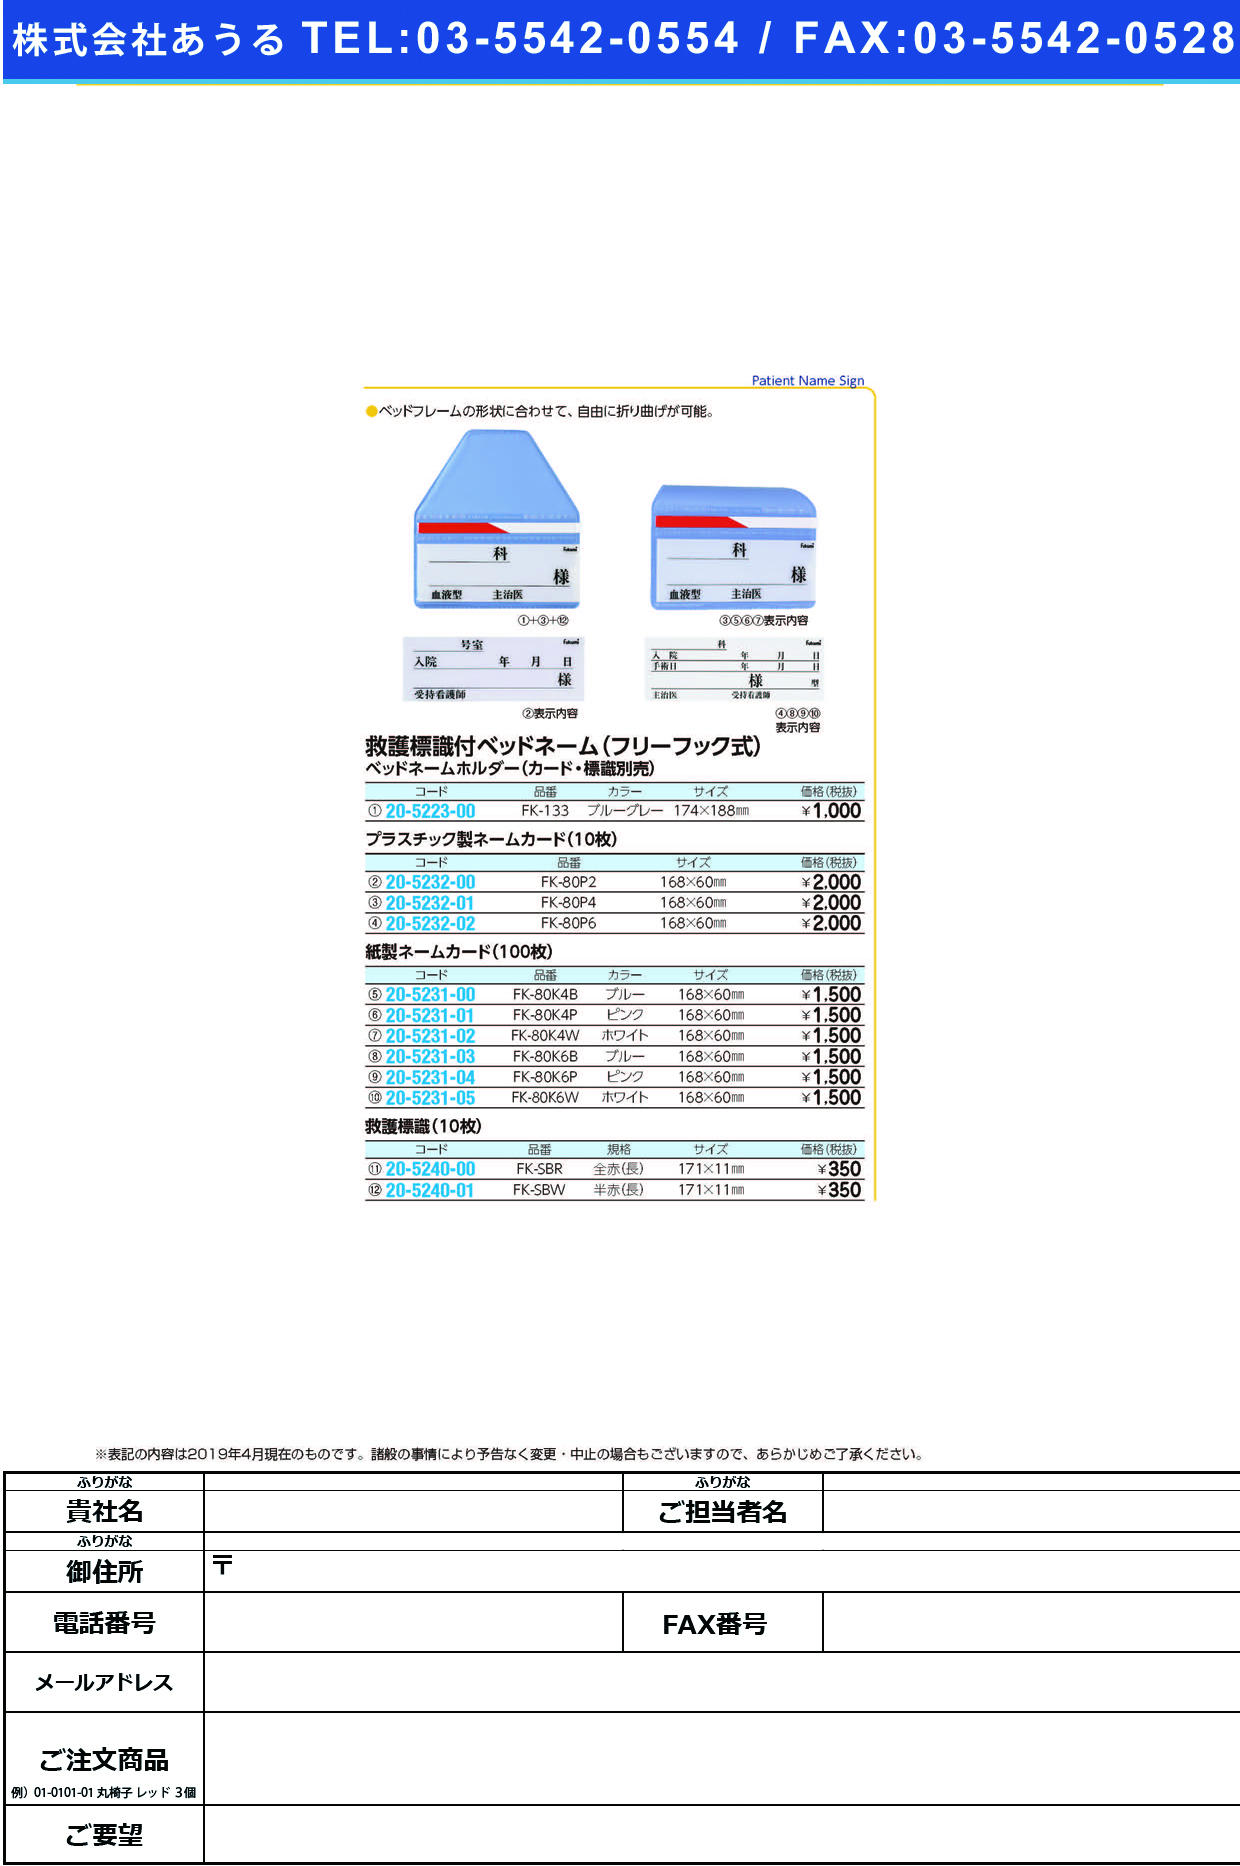 (20-5232-00)ネームカード（プラ） FK-80P2(10ﾏｲｲﾘ) ﾈｰﾑｶｰﾄﾞ【1束単位】【2019年カタログ商品】